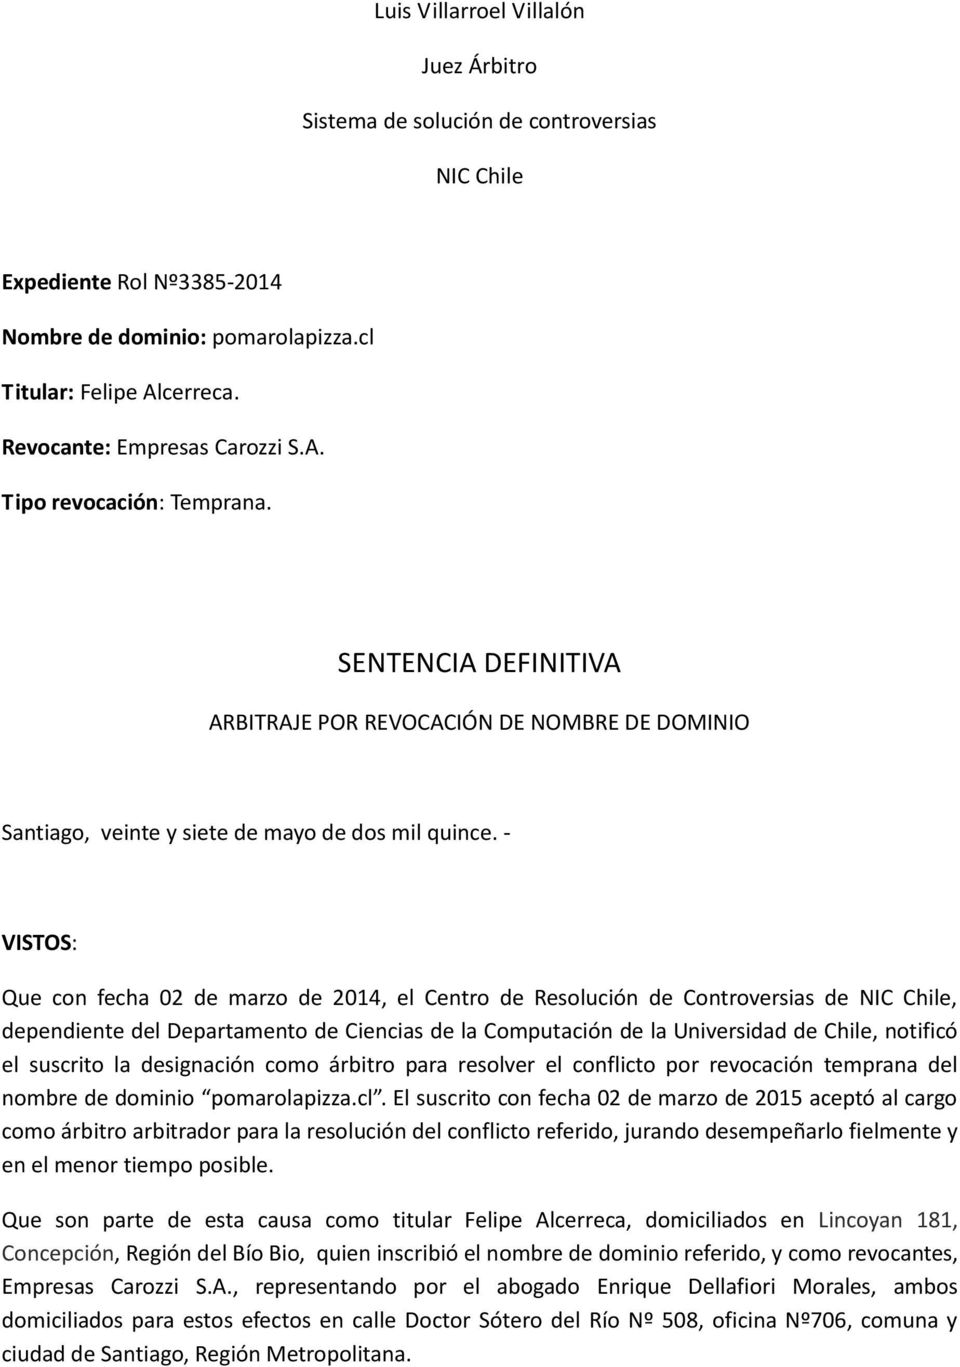 - VISTOS: Que con fecha 02 de marzo de 2014, el Centro de Resolución de Controversias de NIC Chile, dependiente del Departamento de Ciencias de la Computación de la Universidad de Chile, notificó el